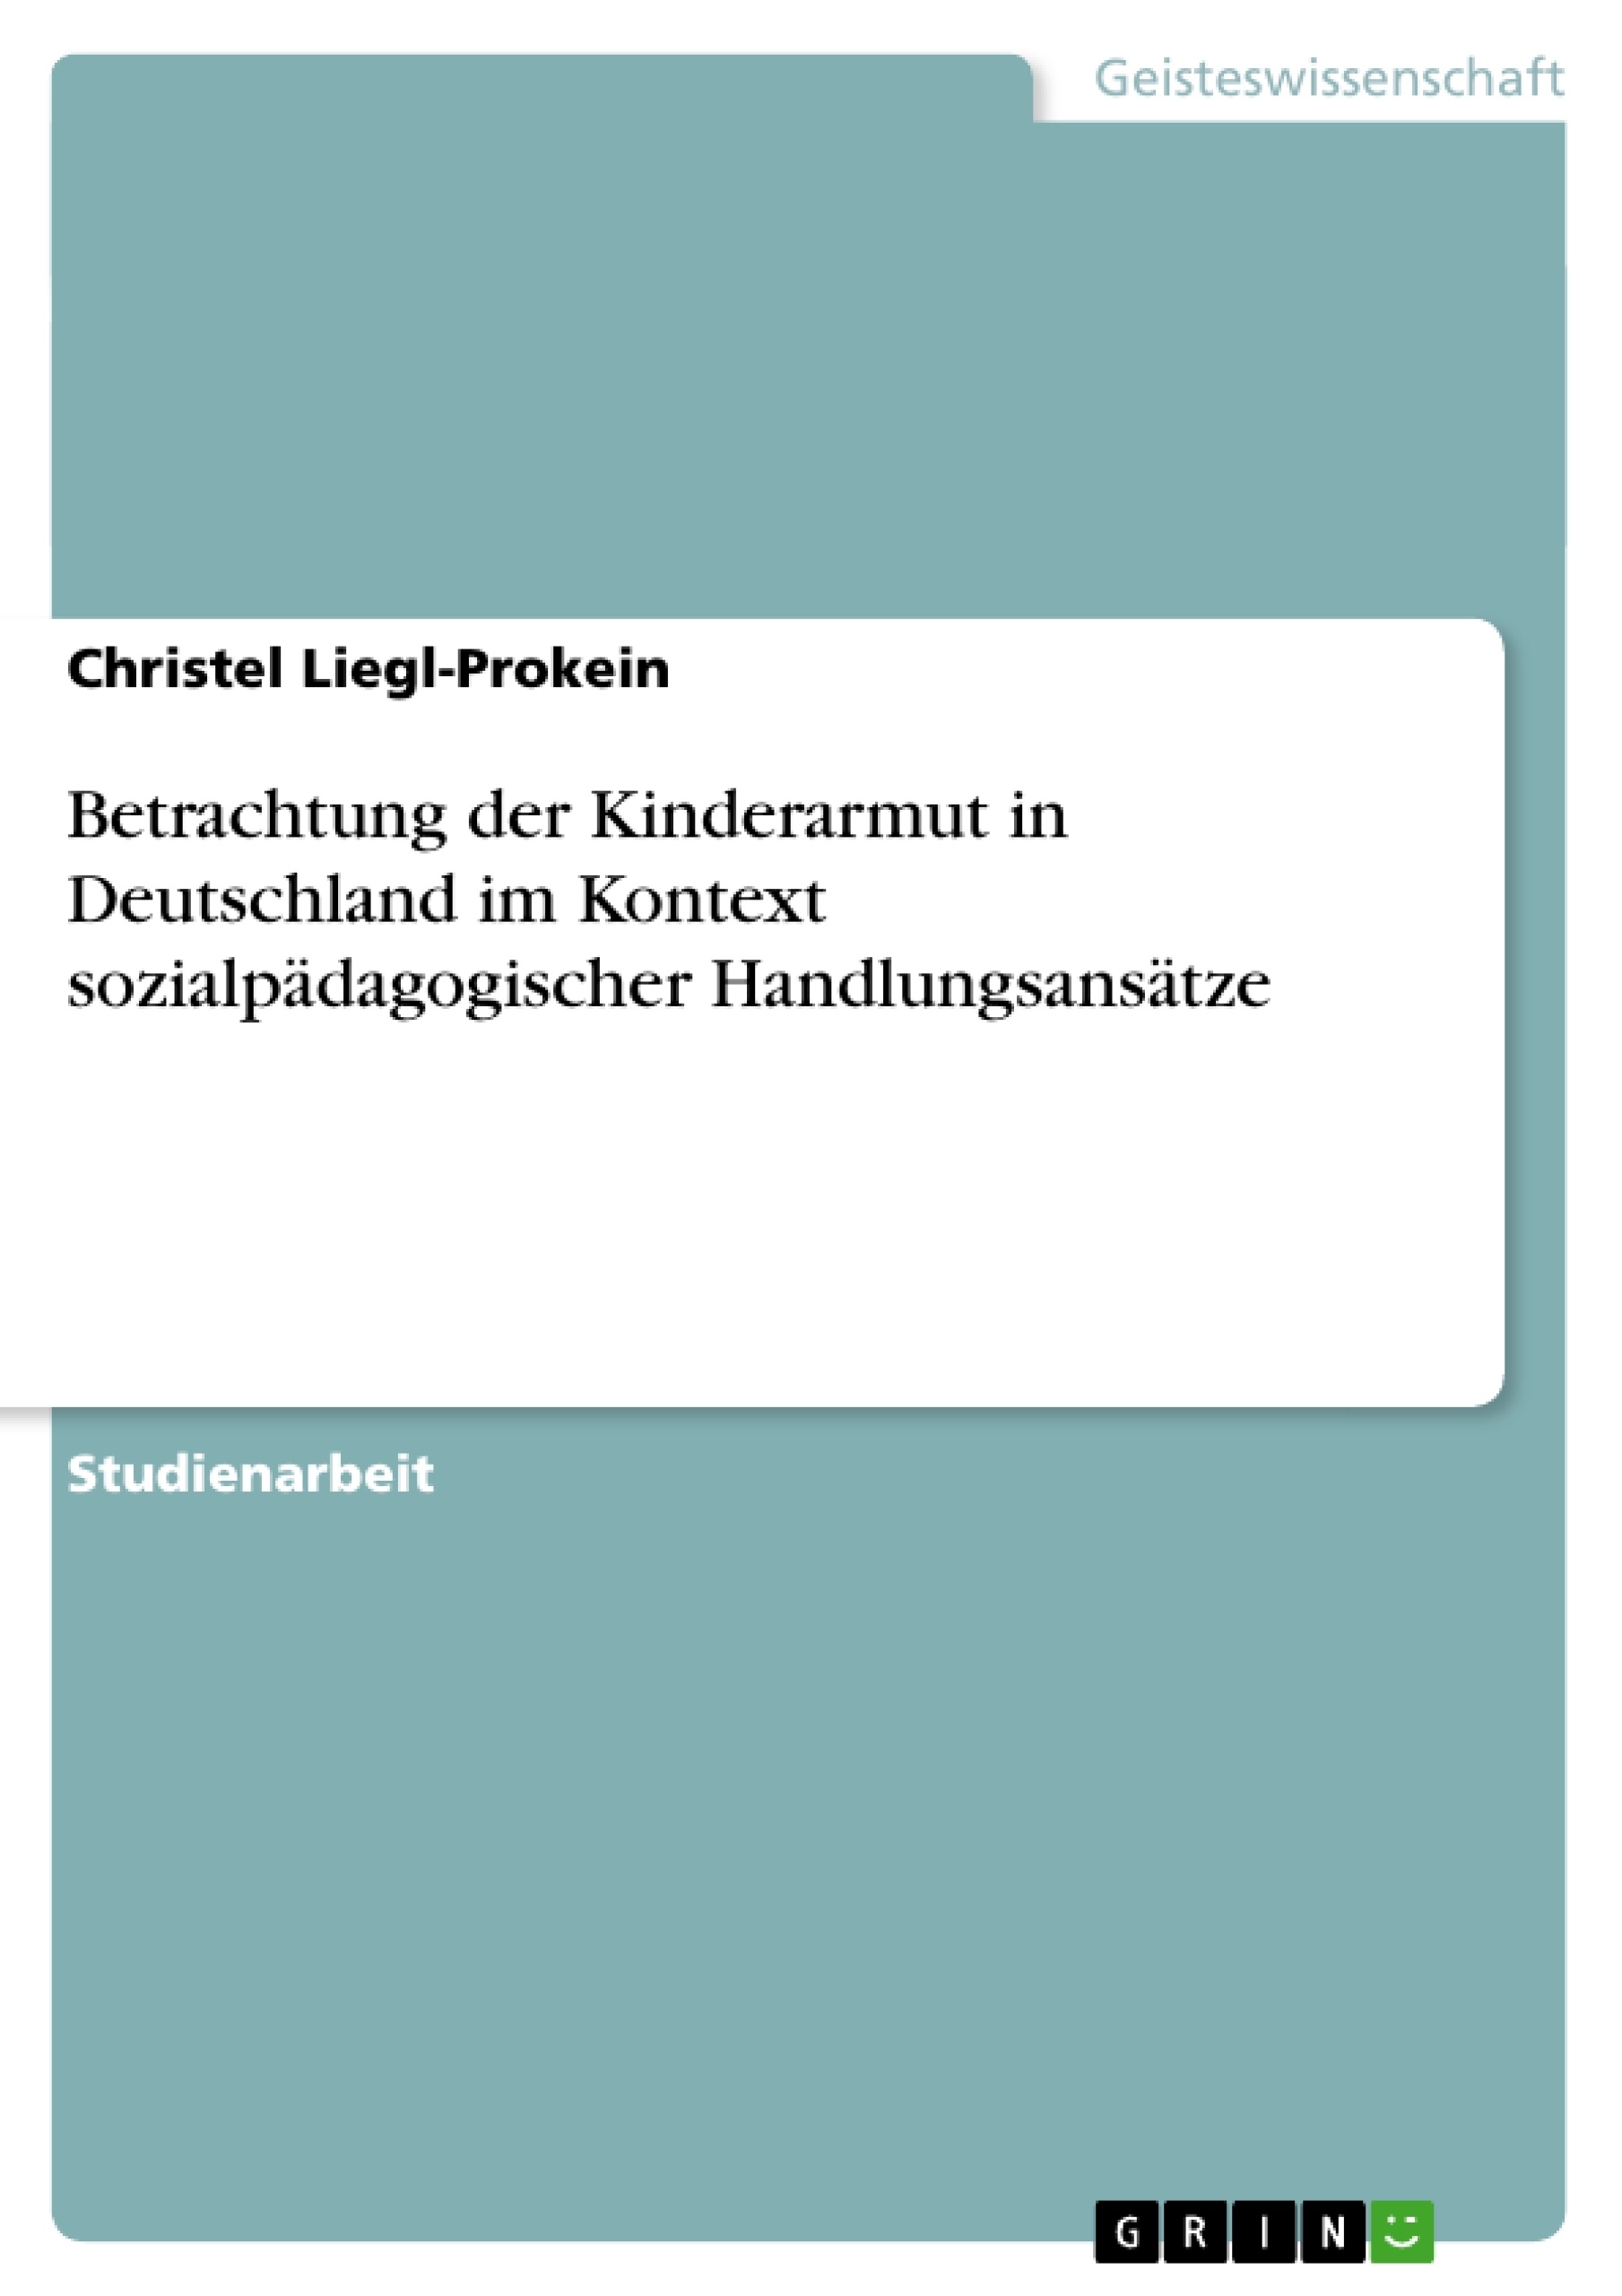 Título: Betrachtung der Kinderarmut in Deutschland im Kontext sozialpädagogischer Handlungsansätze